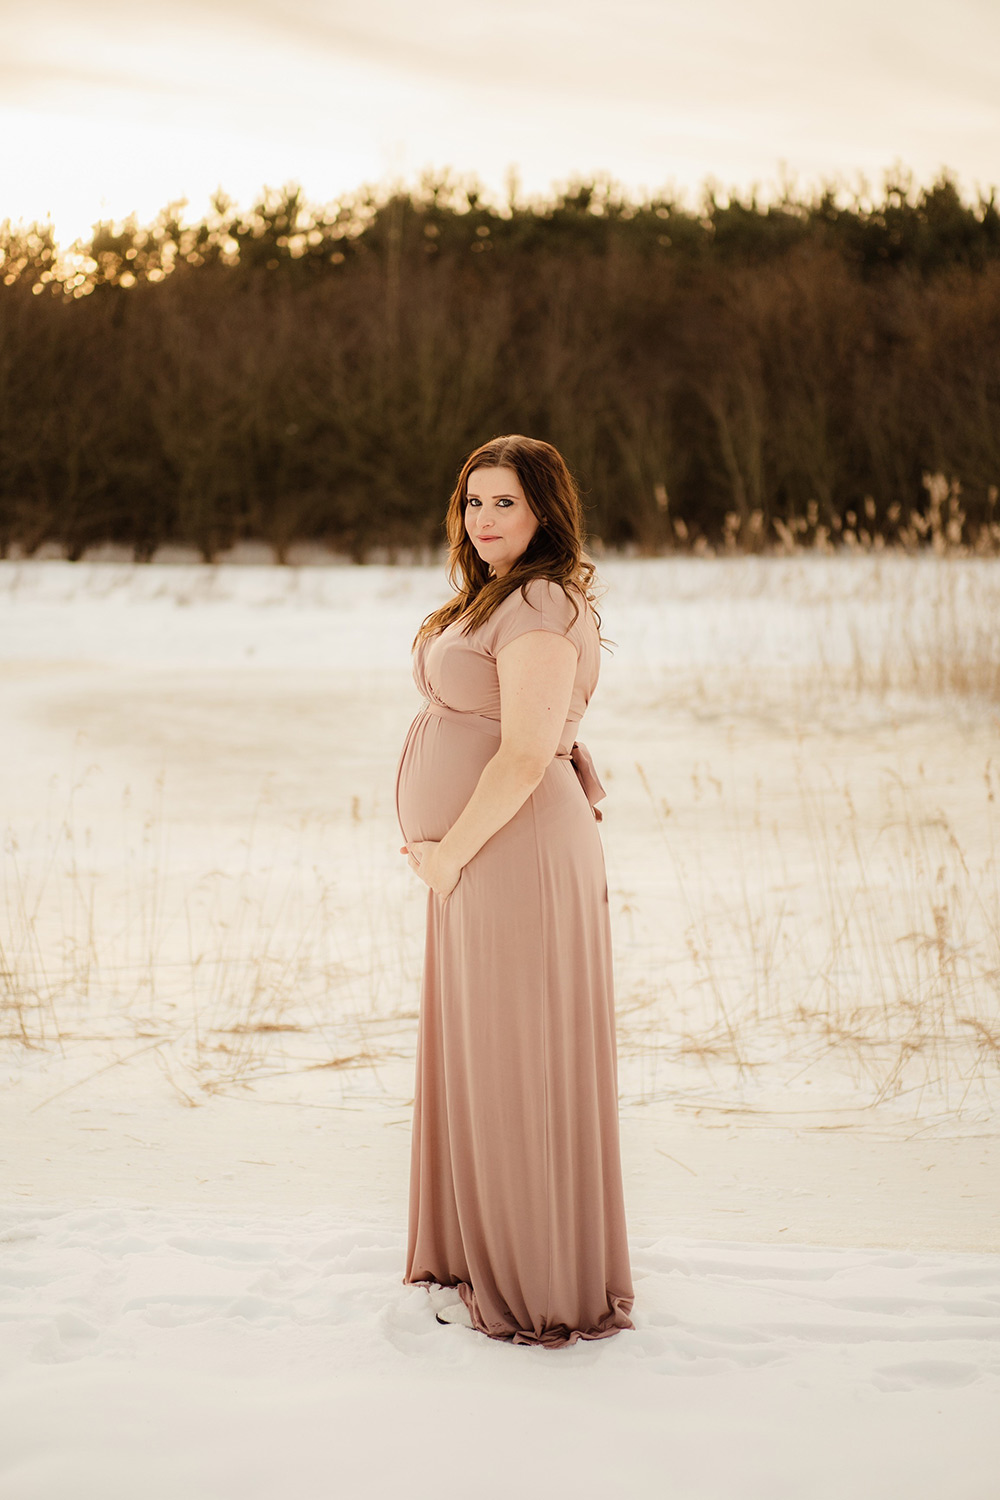 A Snowy Maternity Photoshoot - Tiffany Rose Maternity Blog CA